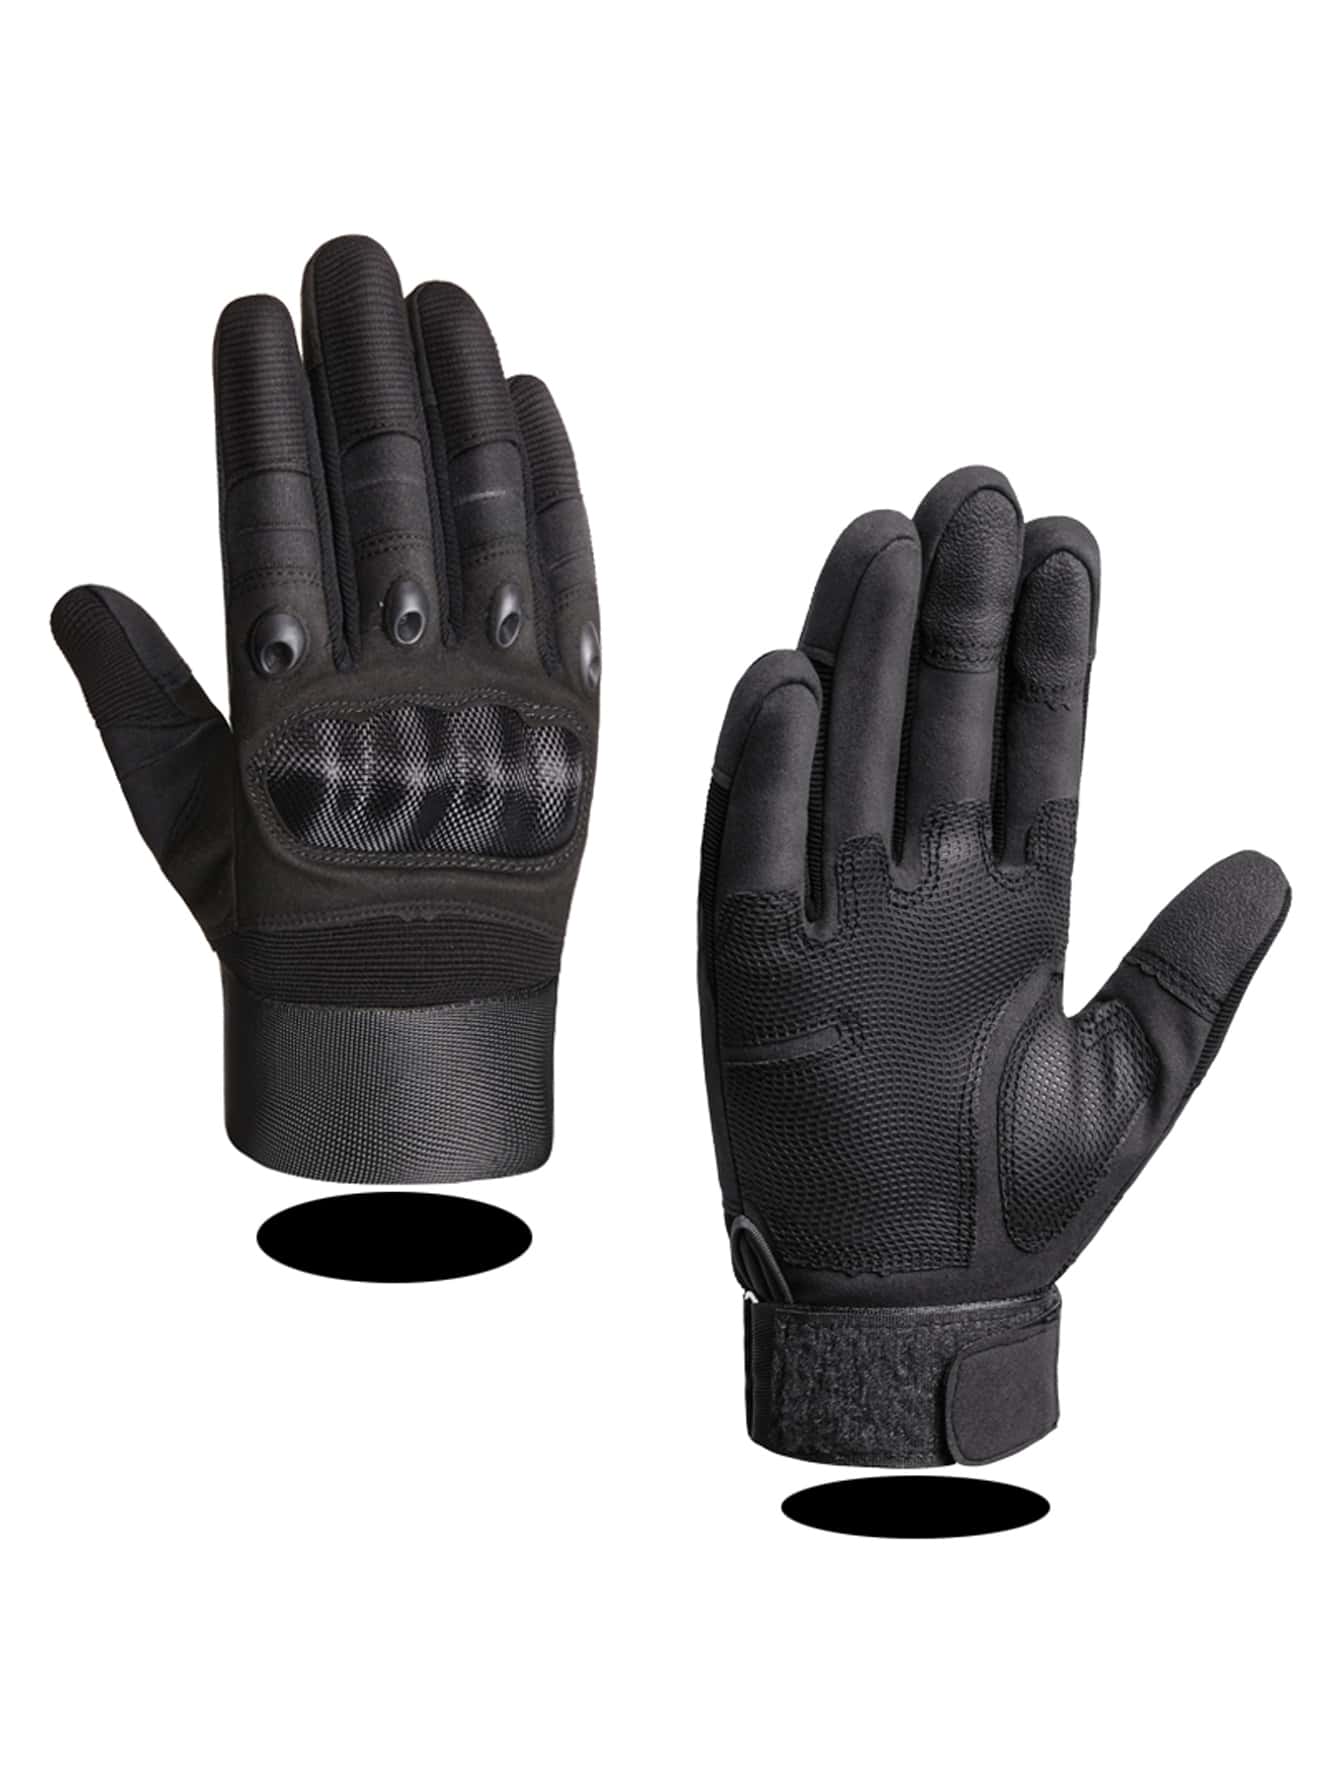 1 пара спортивных тренировочных перчаток с полным пальцем для боевых тренировок на мотоциклах, черный